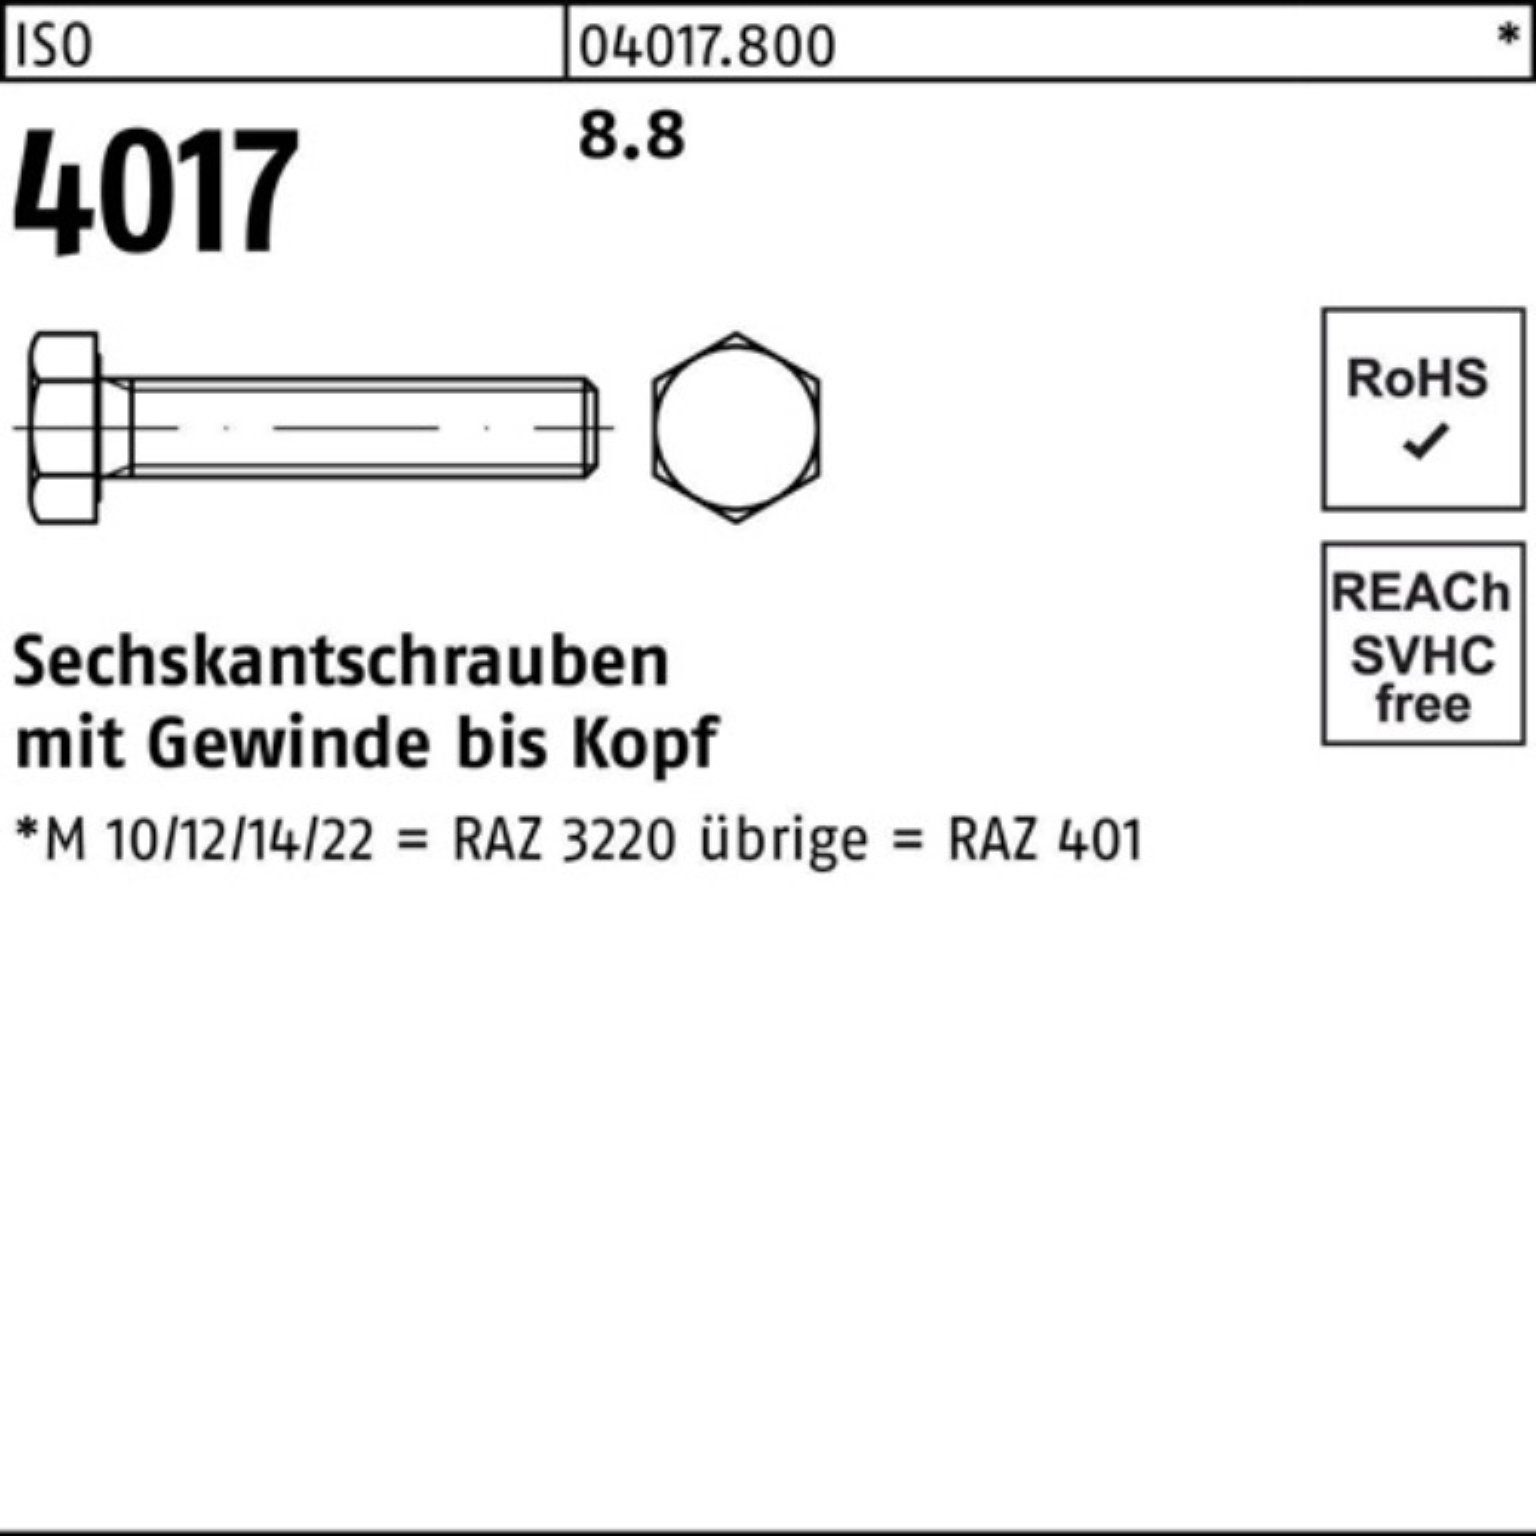 Stück Sechskantschraube Sechskantschraube 4017 M27x Pack Bufab 100er VG 8.8 ISO 60 10 ISO 401